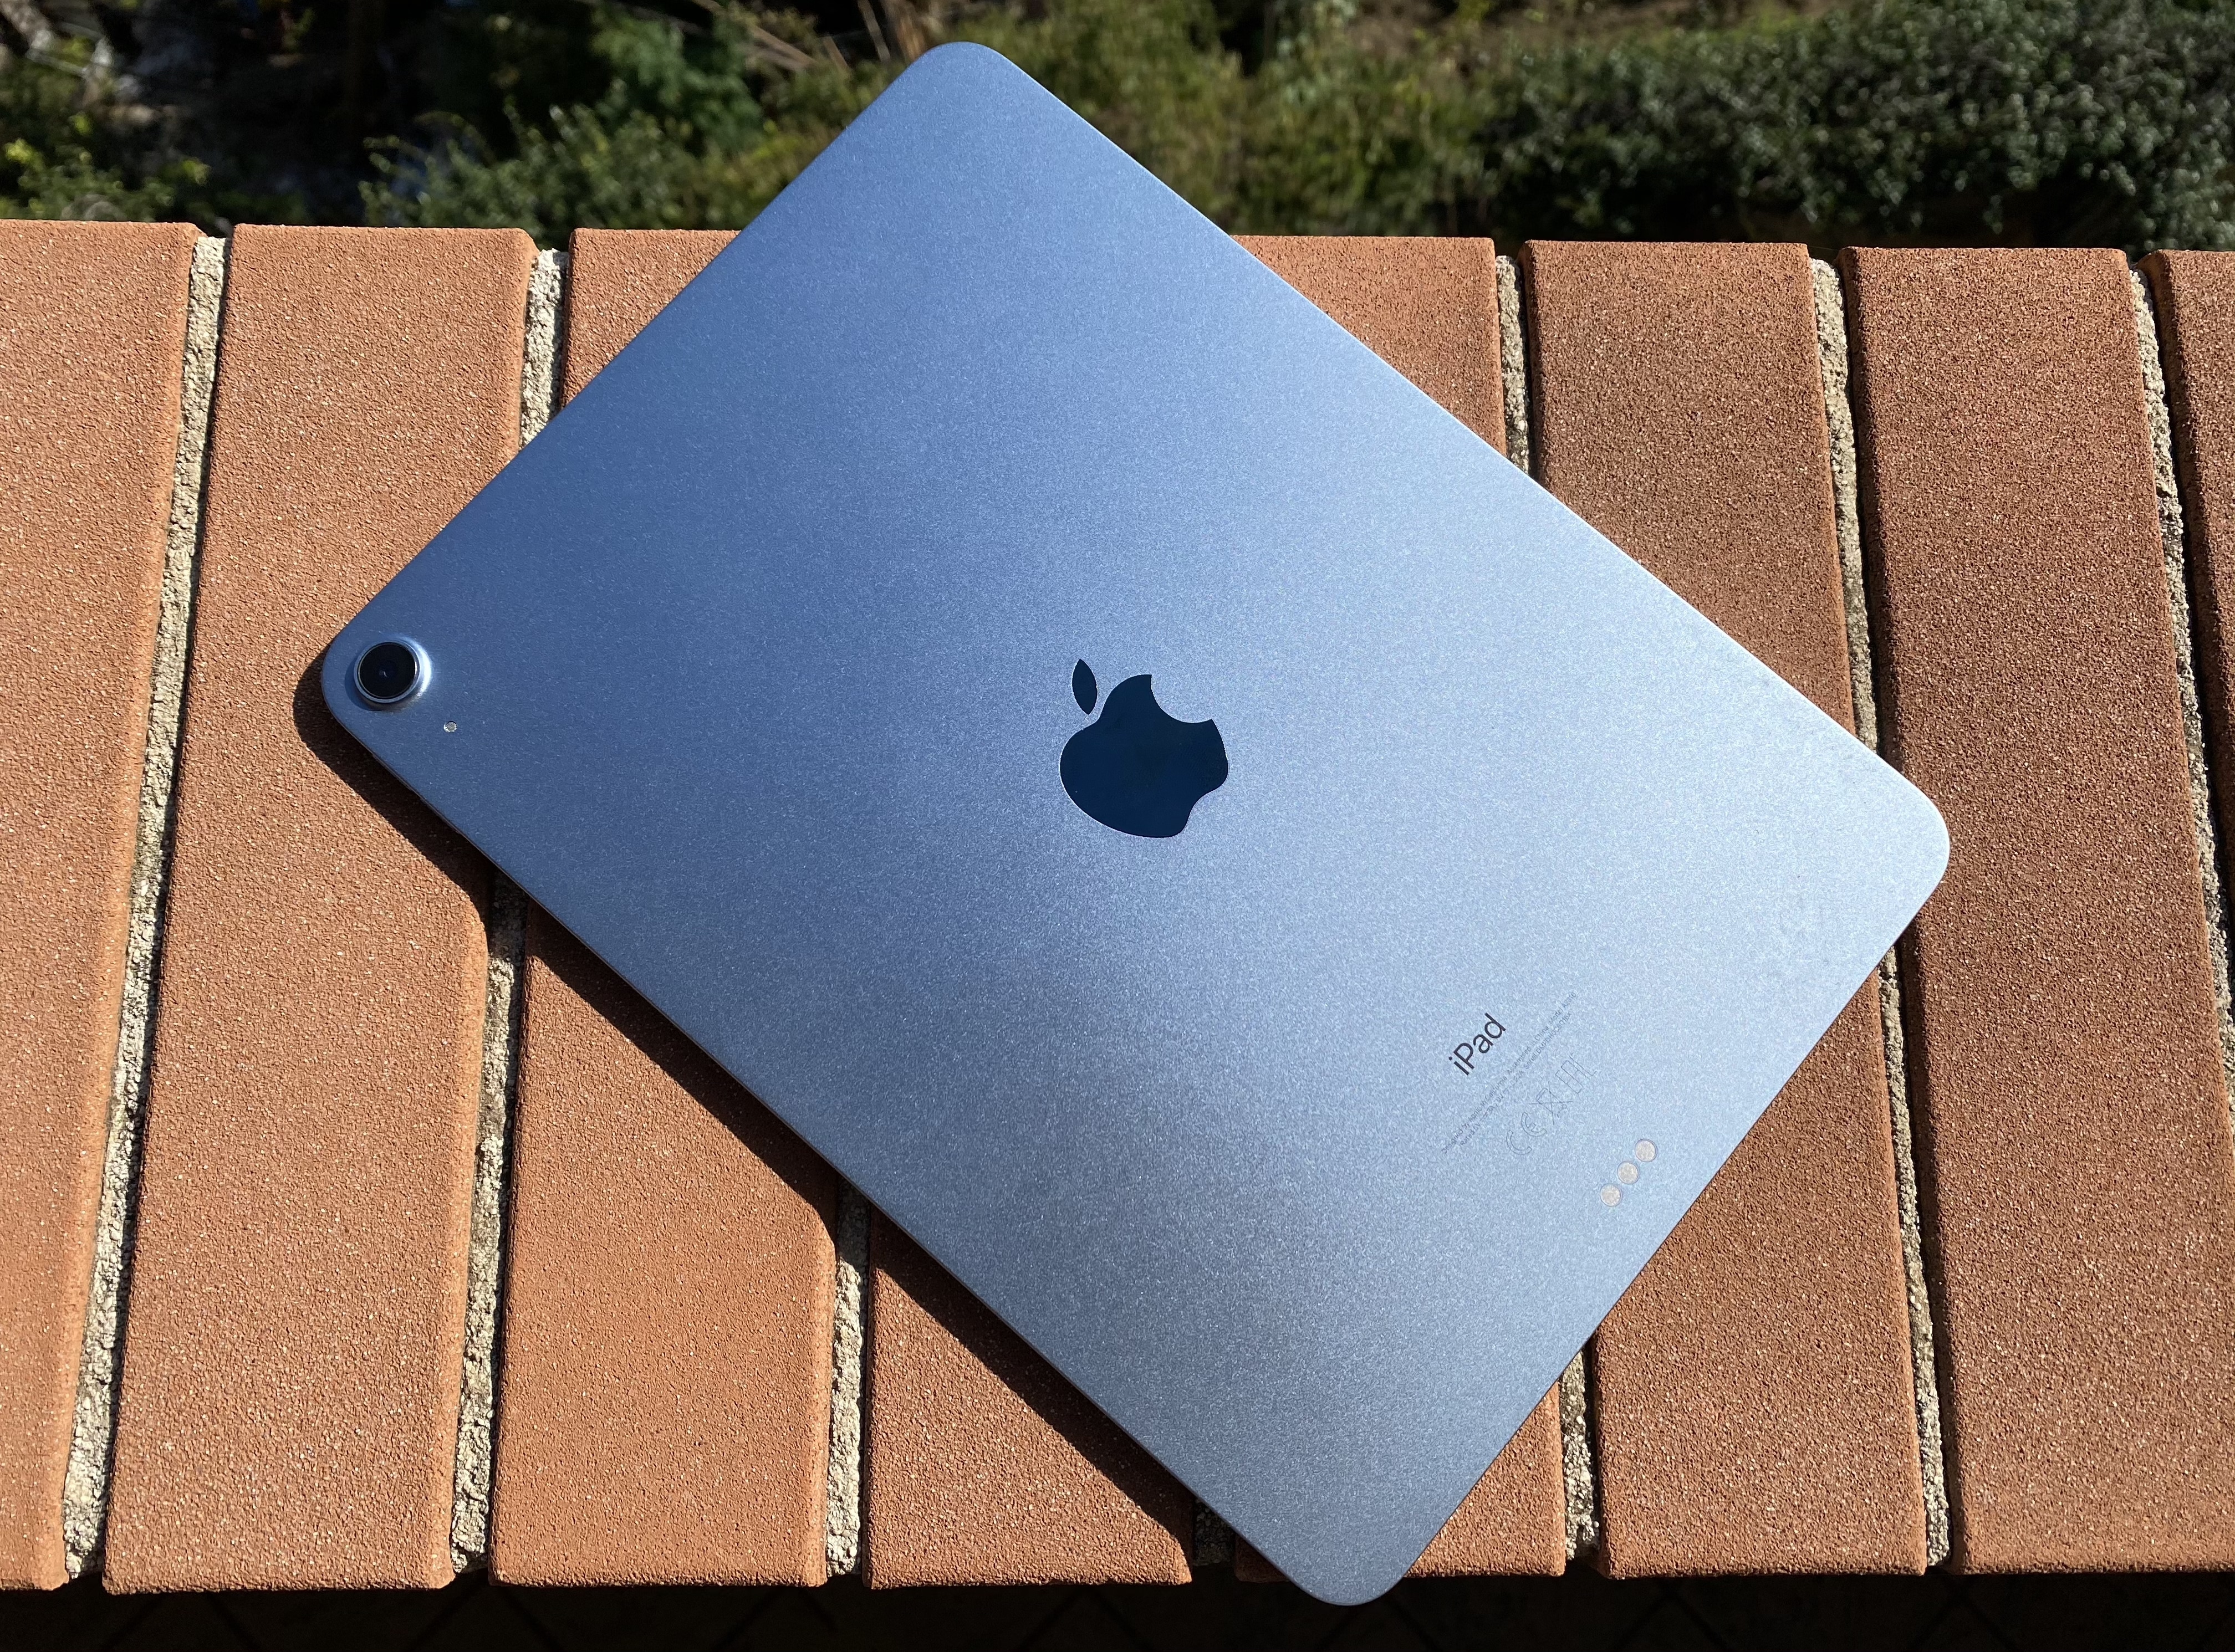 Apple's Sky Blue color.